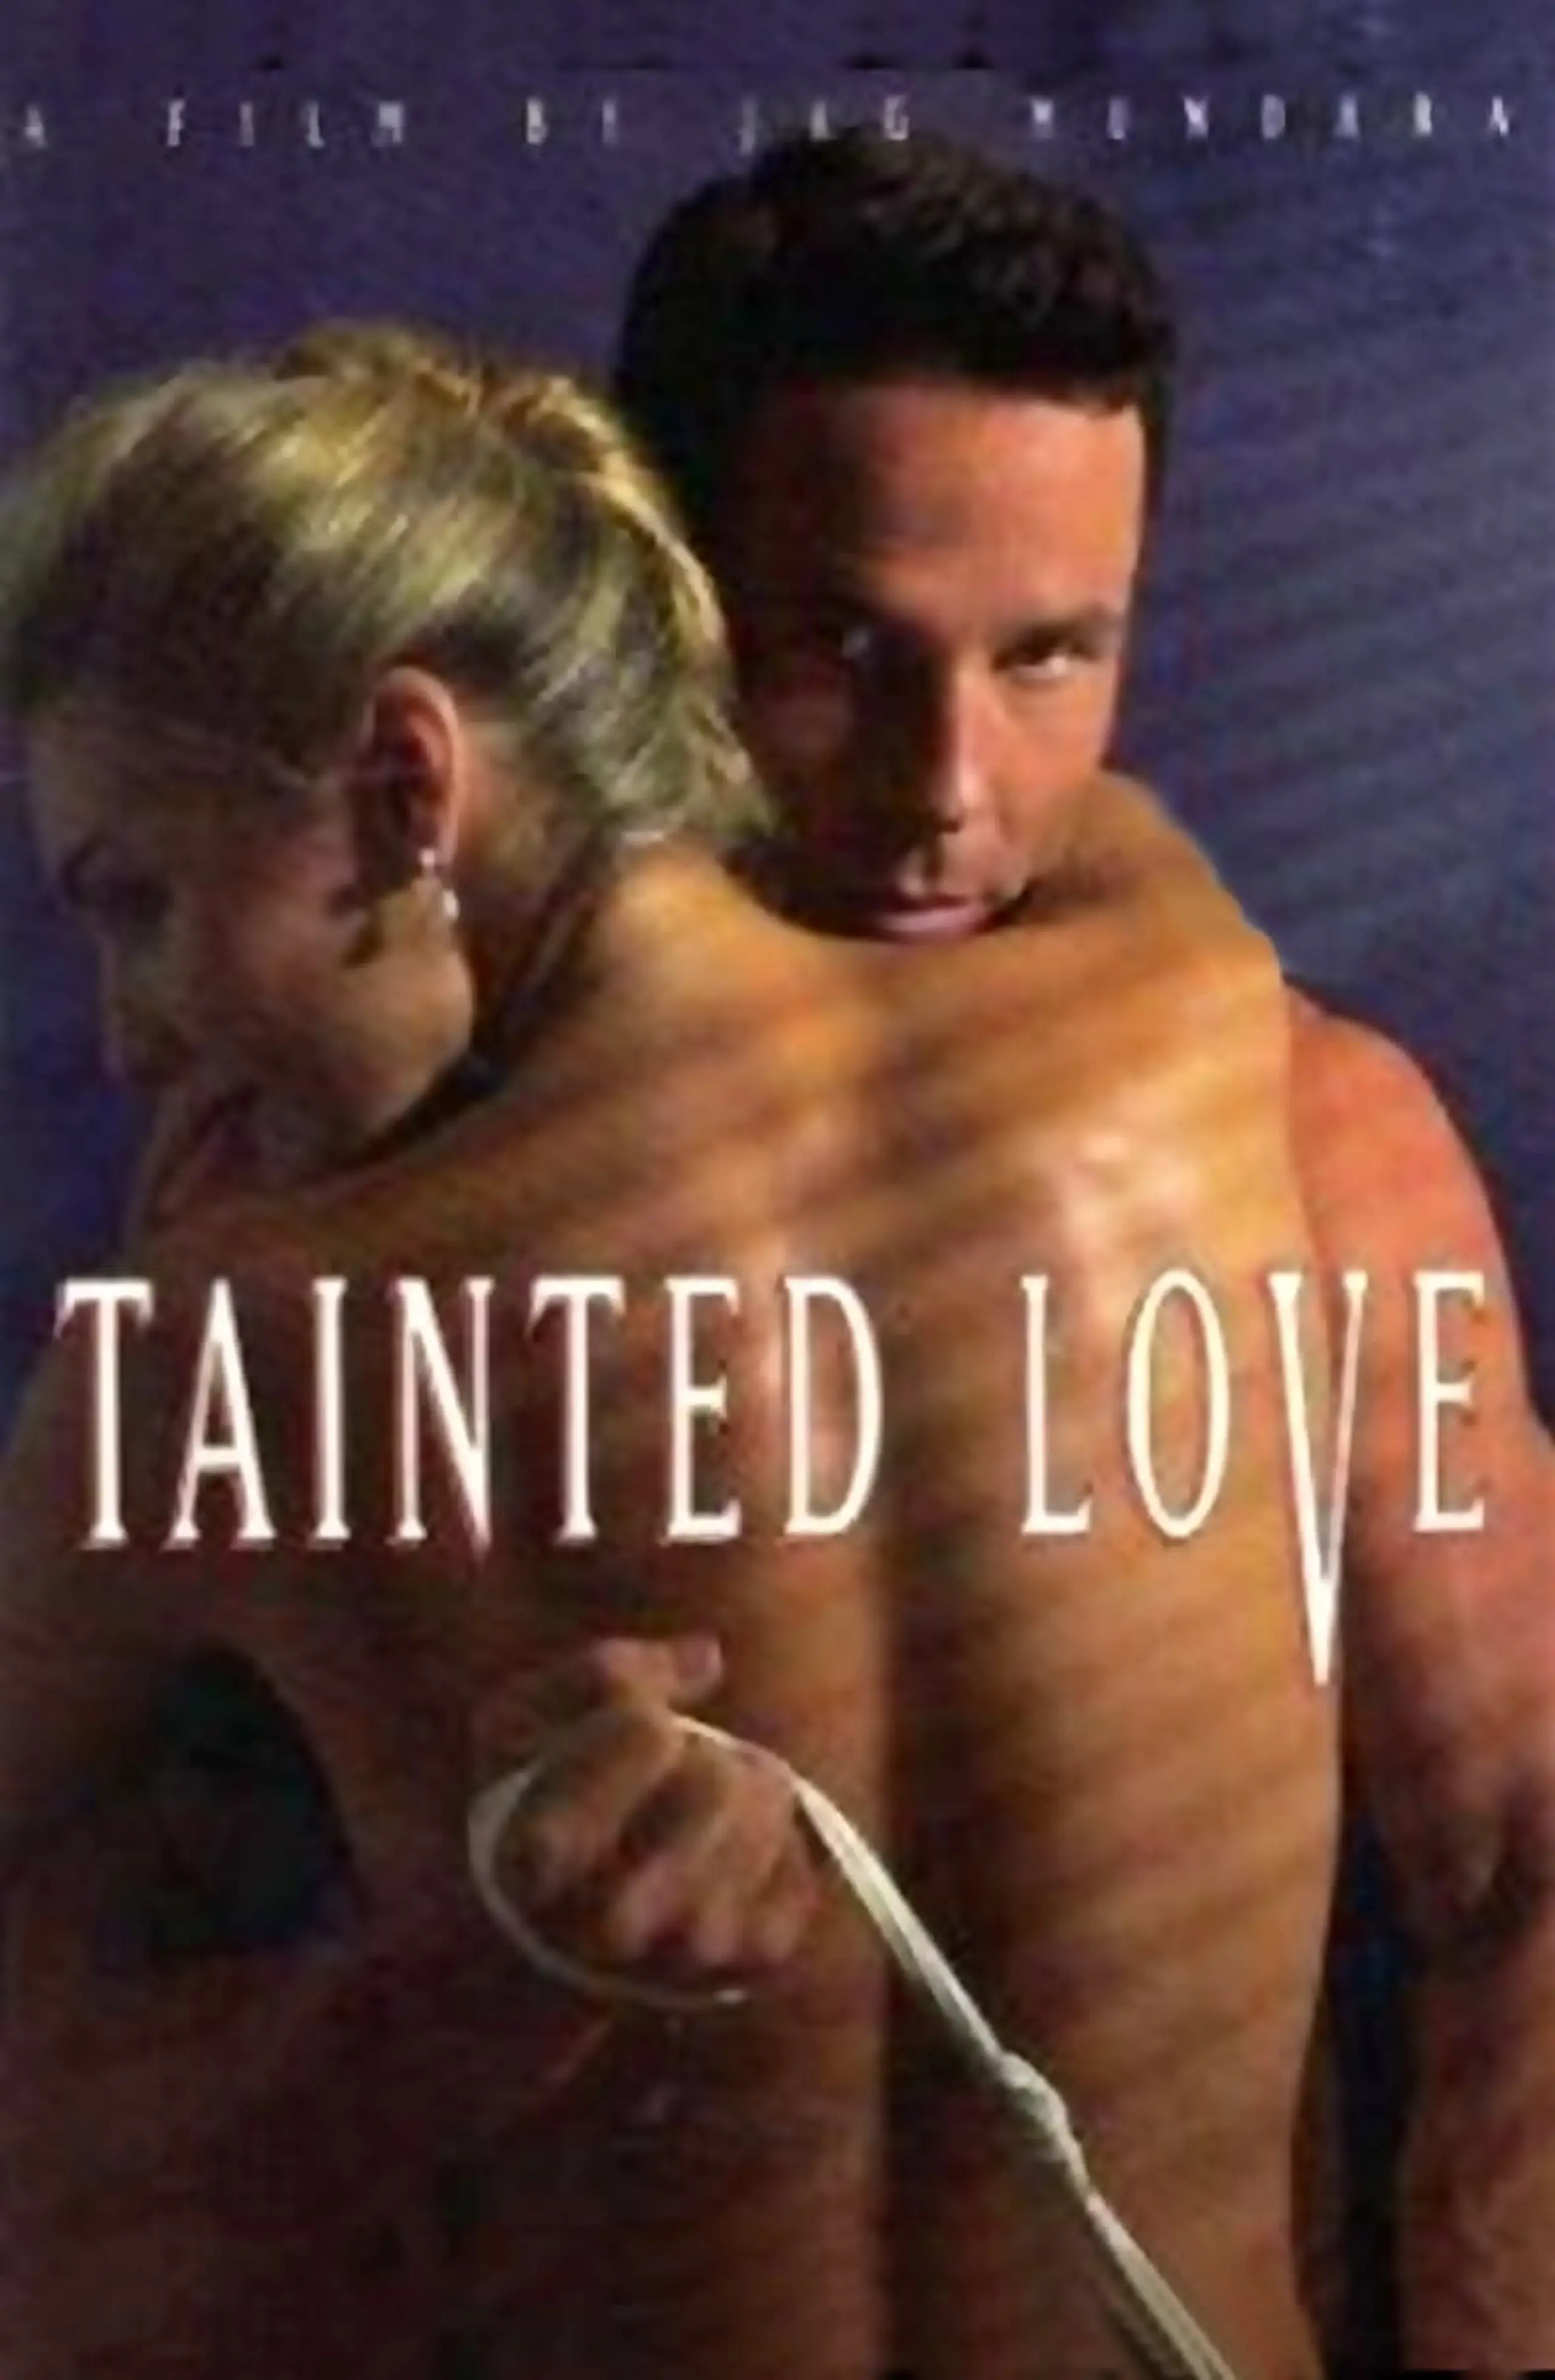 Tainted Love - Gefährliches Verlangen